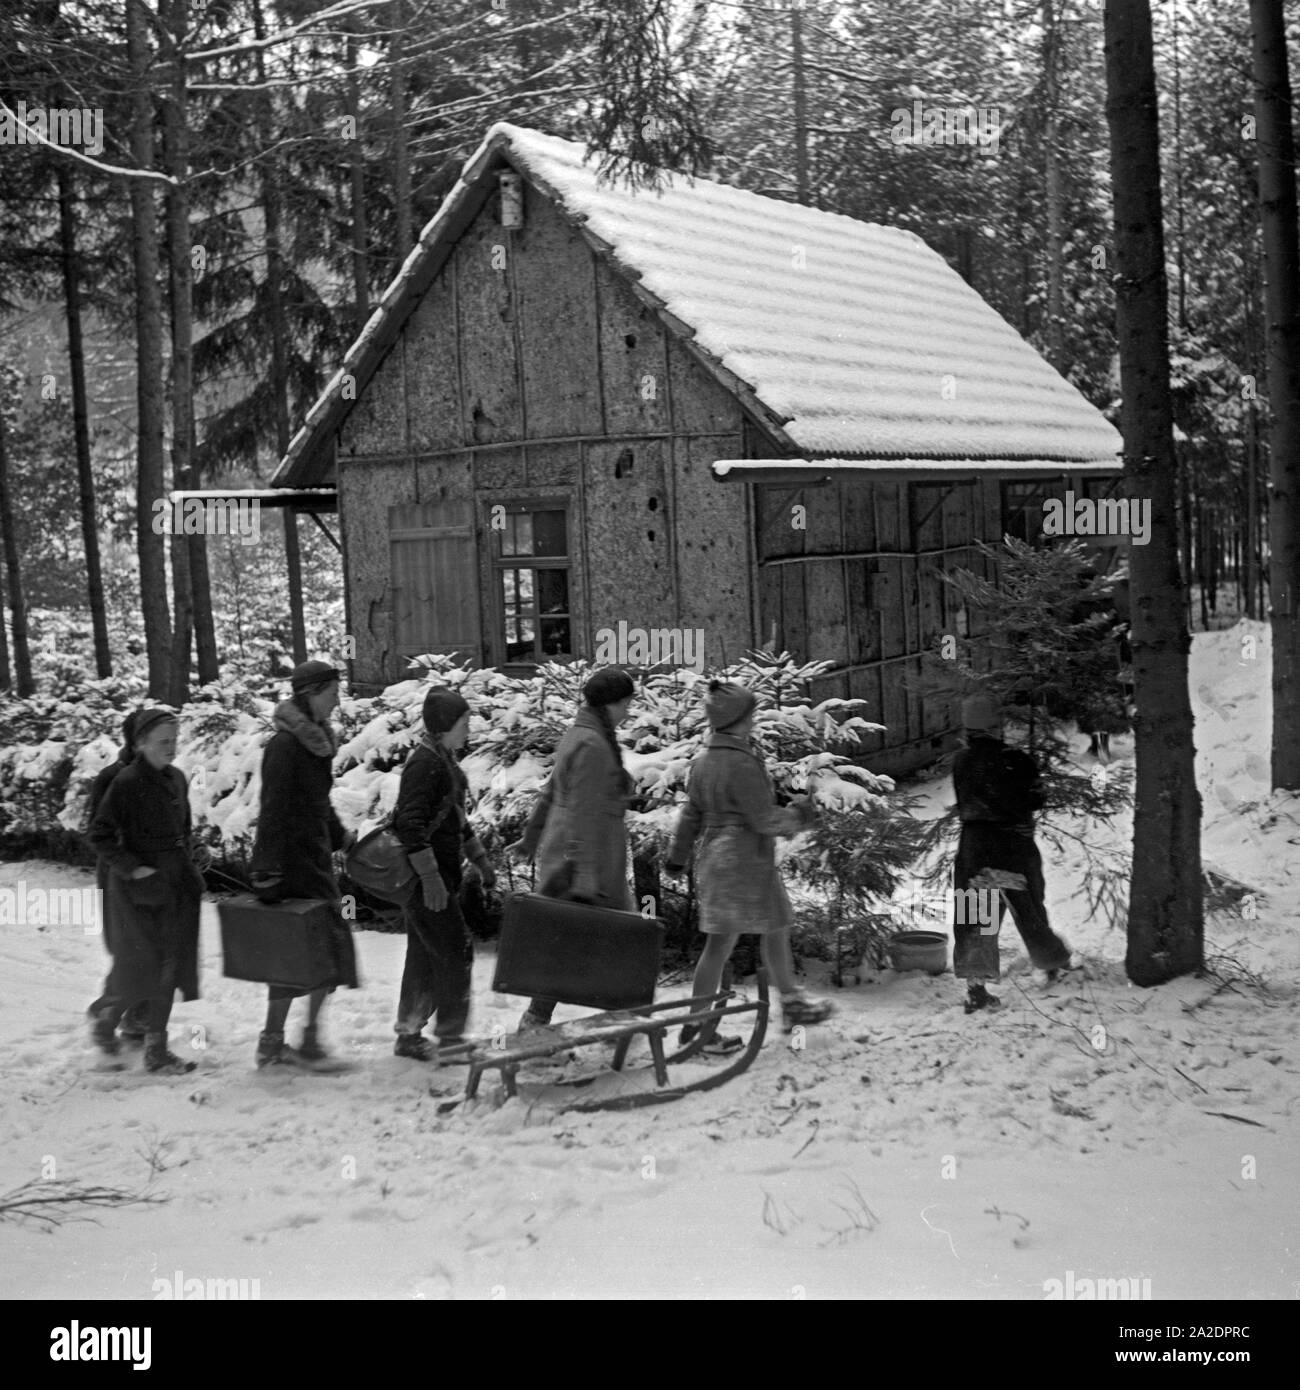 Eine Gruppe von Mädchen kommt bei einer verschneiten Waldhütte mit Koffern und Christbaum an, Deutschland 1930er Jahre. A group of girls arriving at a snowy hut with suitcases and their Christmas tree, Germany 1930s. Stock Photo